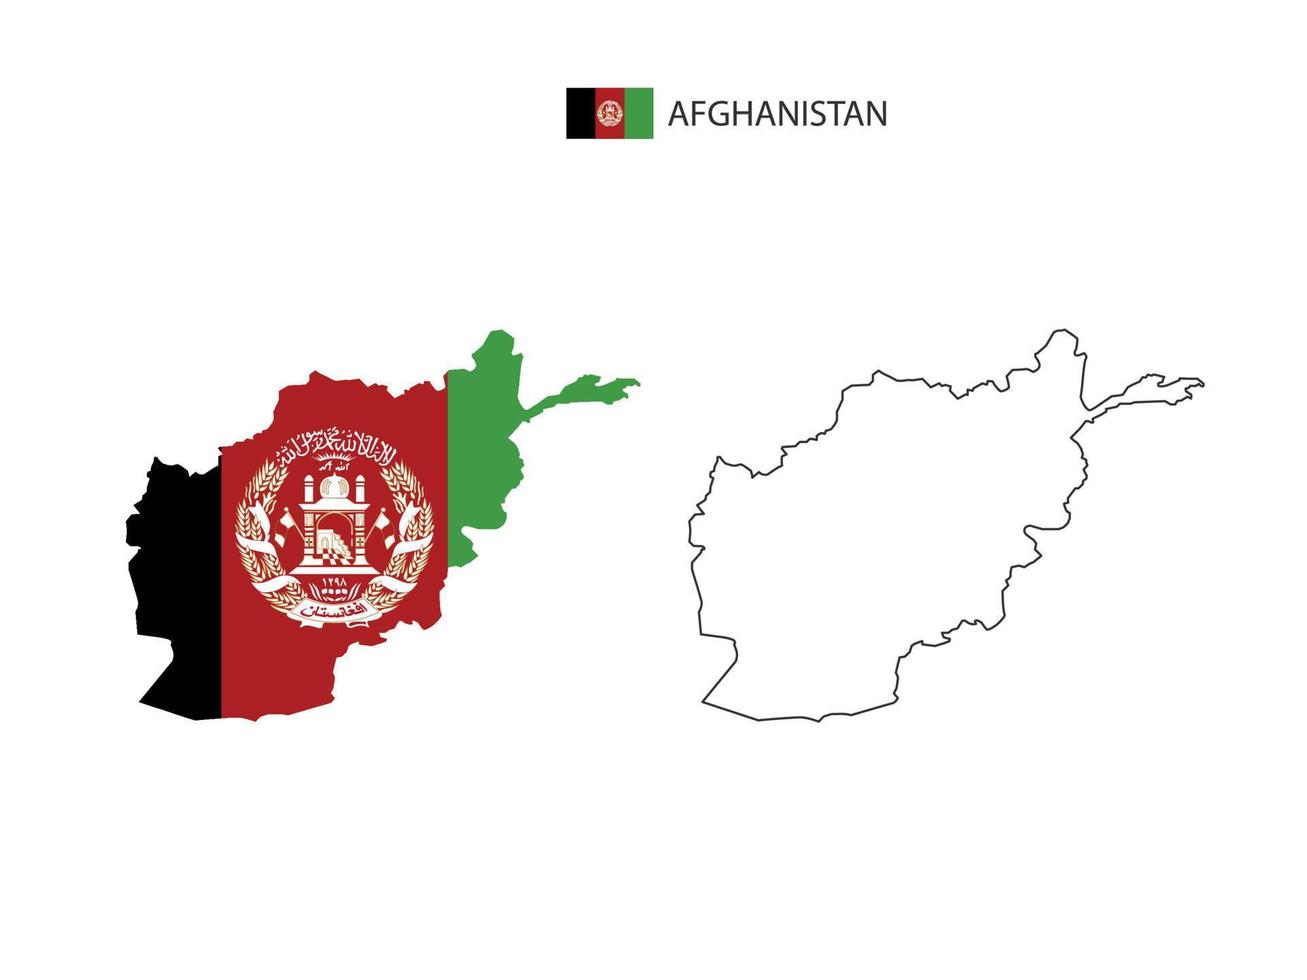 afghanistan carte ville vecteur divisé par le style de simplicité de contour. ont 2 versions, la version en ligne fine noire et la couleur de la version du drapeau du pays. les deux cartes étaient sur fond blanc.